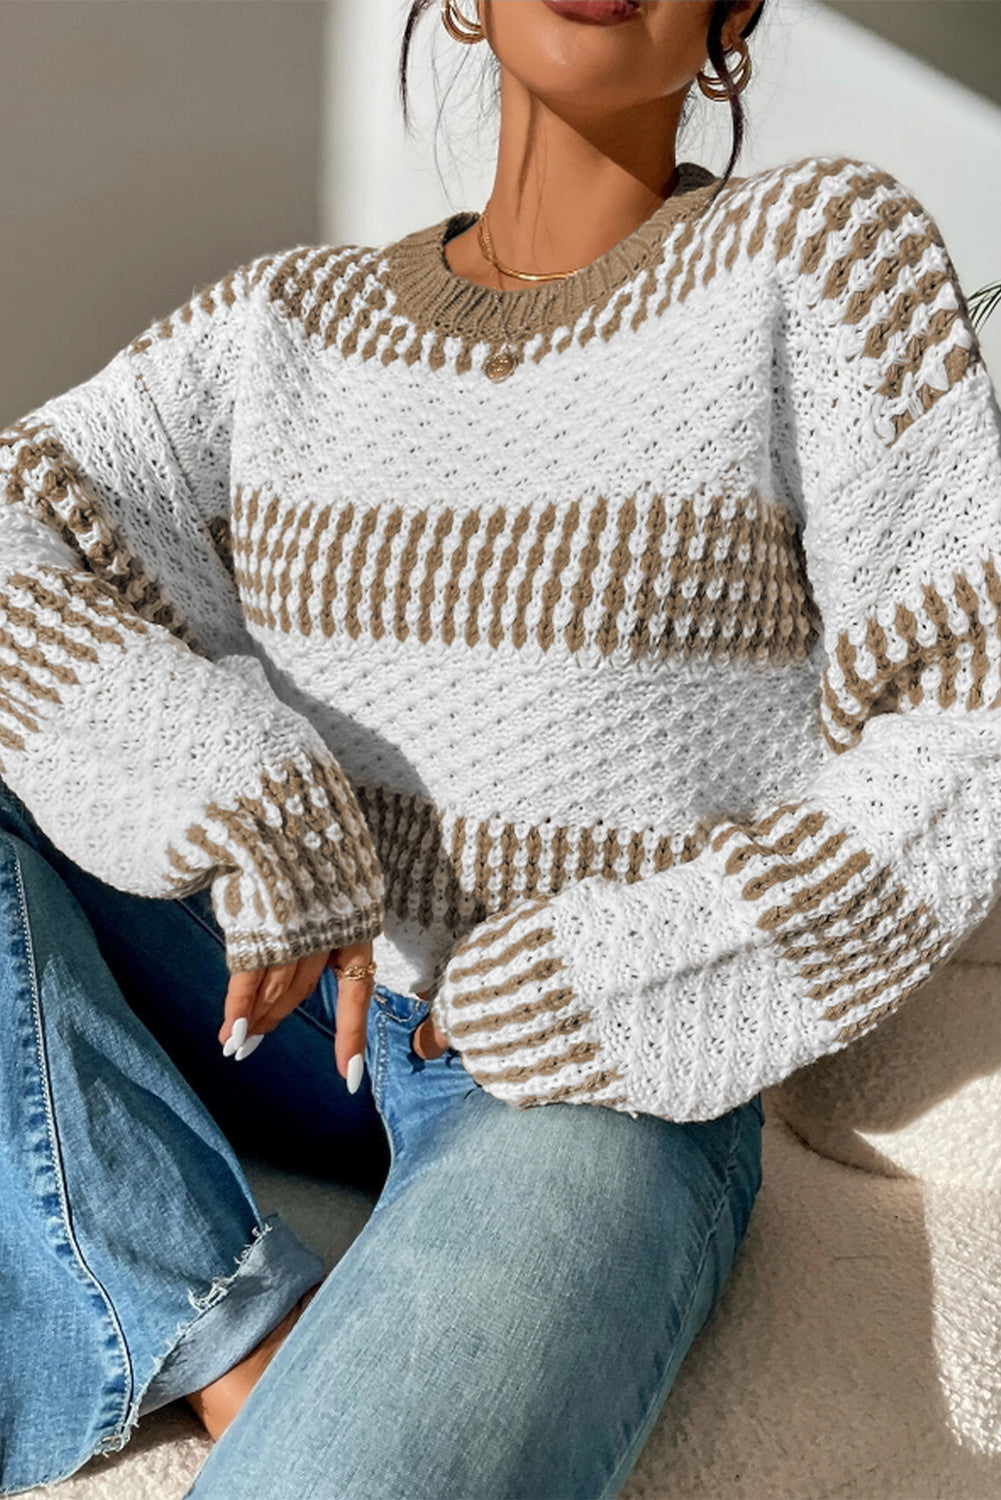 Večbarvni dvobarvni pulover z navpičnimi črtami na spuščena ramena